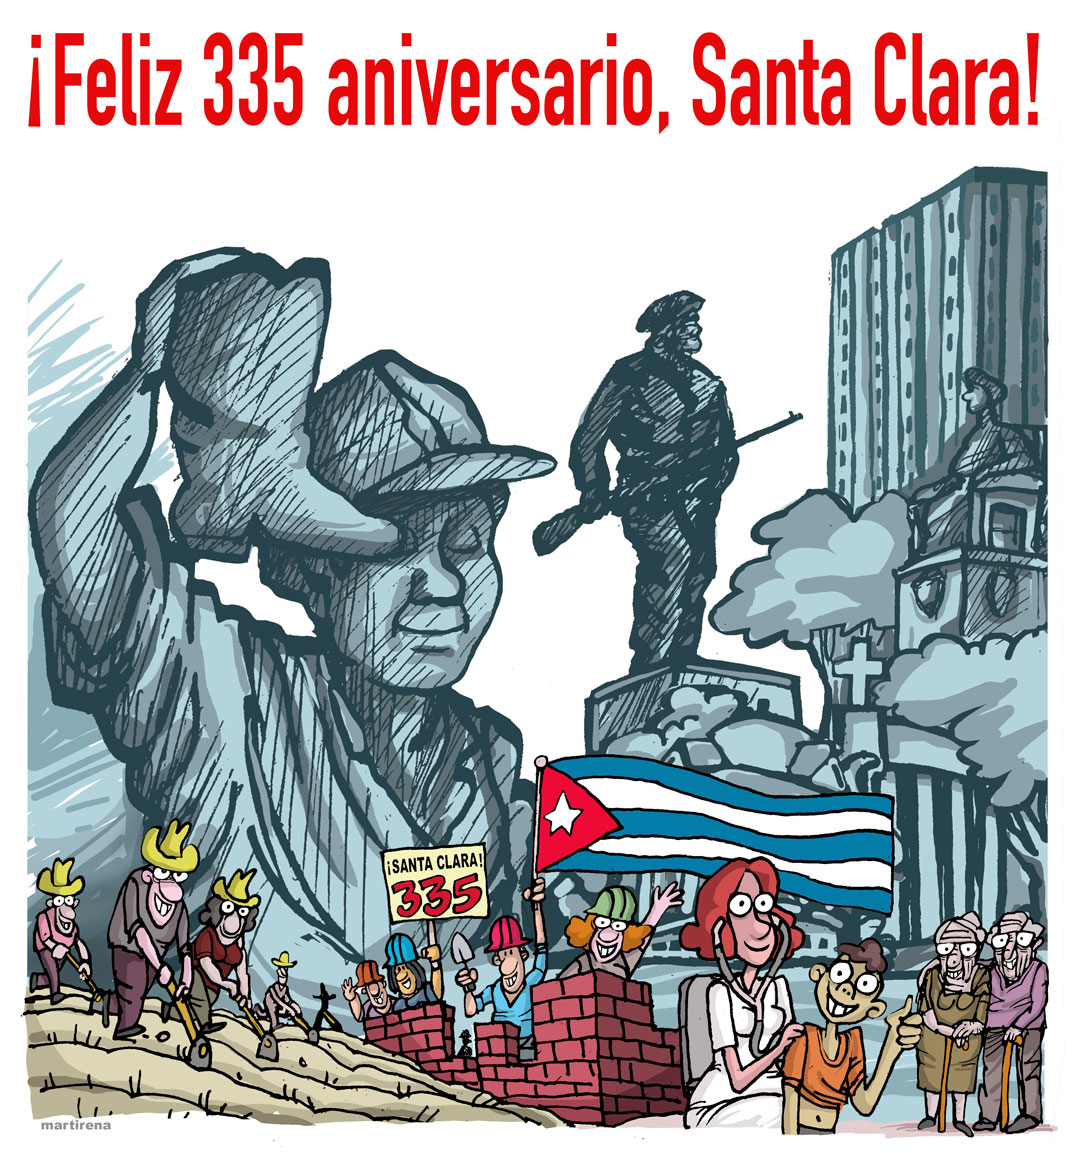 Comentario gráfico de Alfredo Martirena sobre el aniversario 335 de la fundación de Santa Clara.